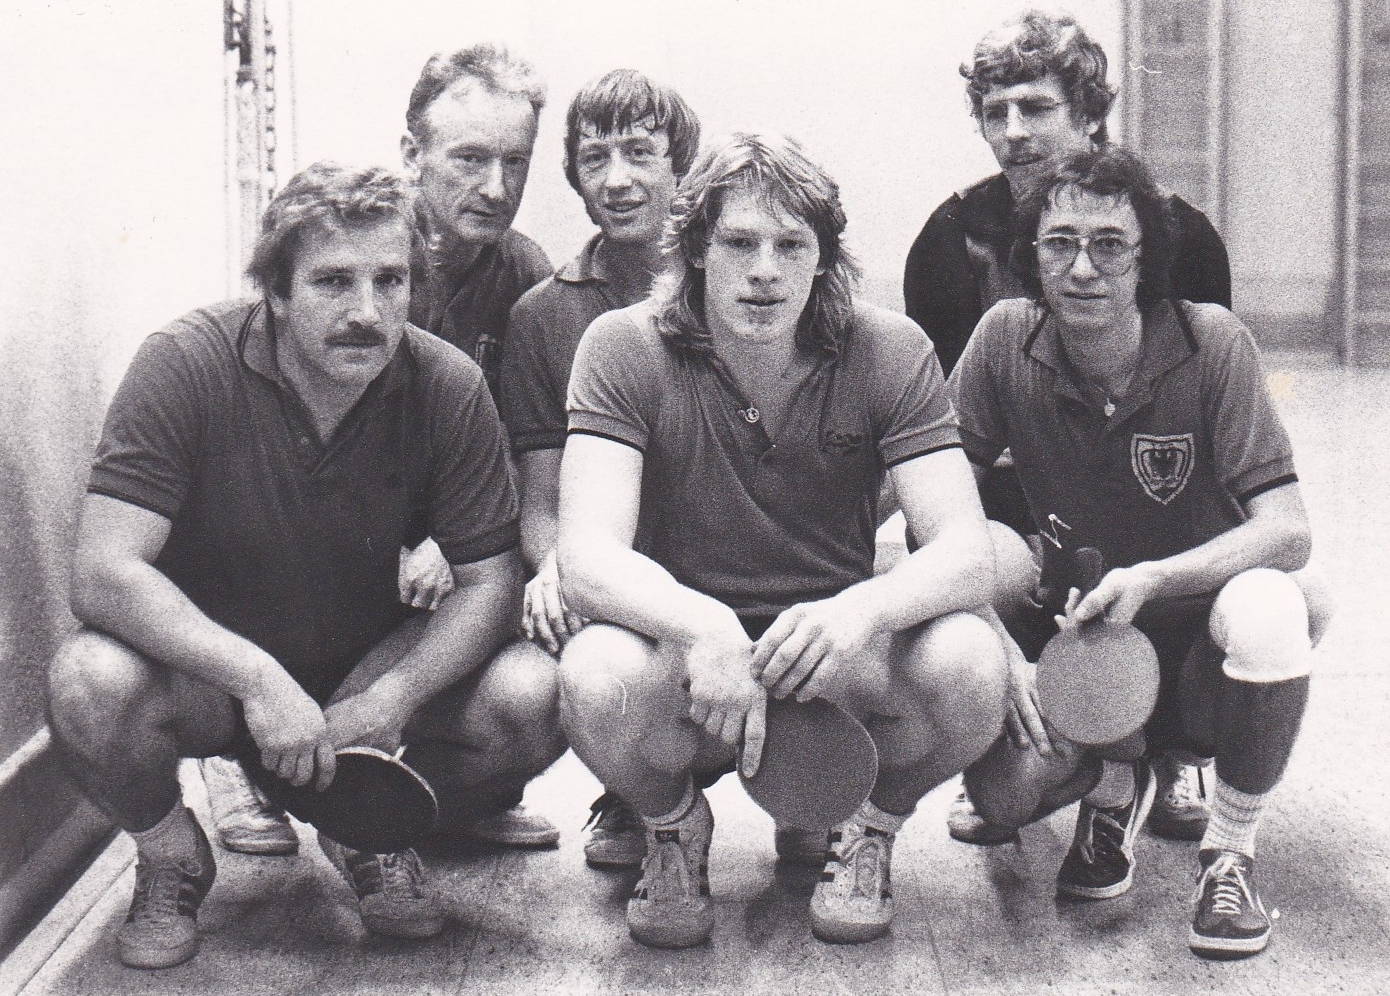 Herren 1 VR 1983/84. Von links: Wöhrle, Wehrmann, P. Müller, Regele, Schote, Bacher